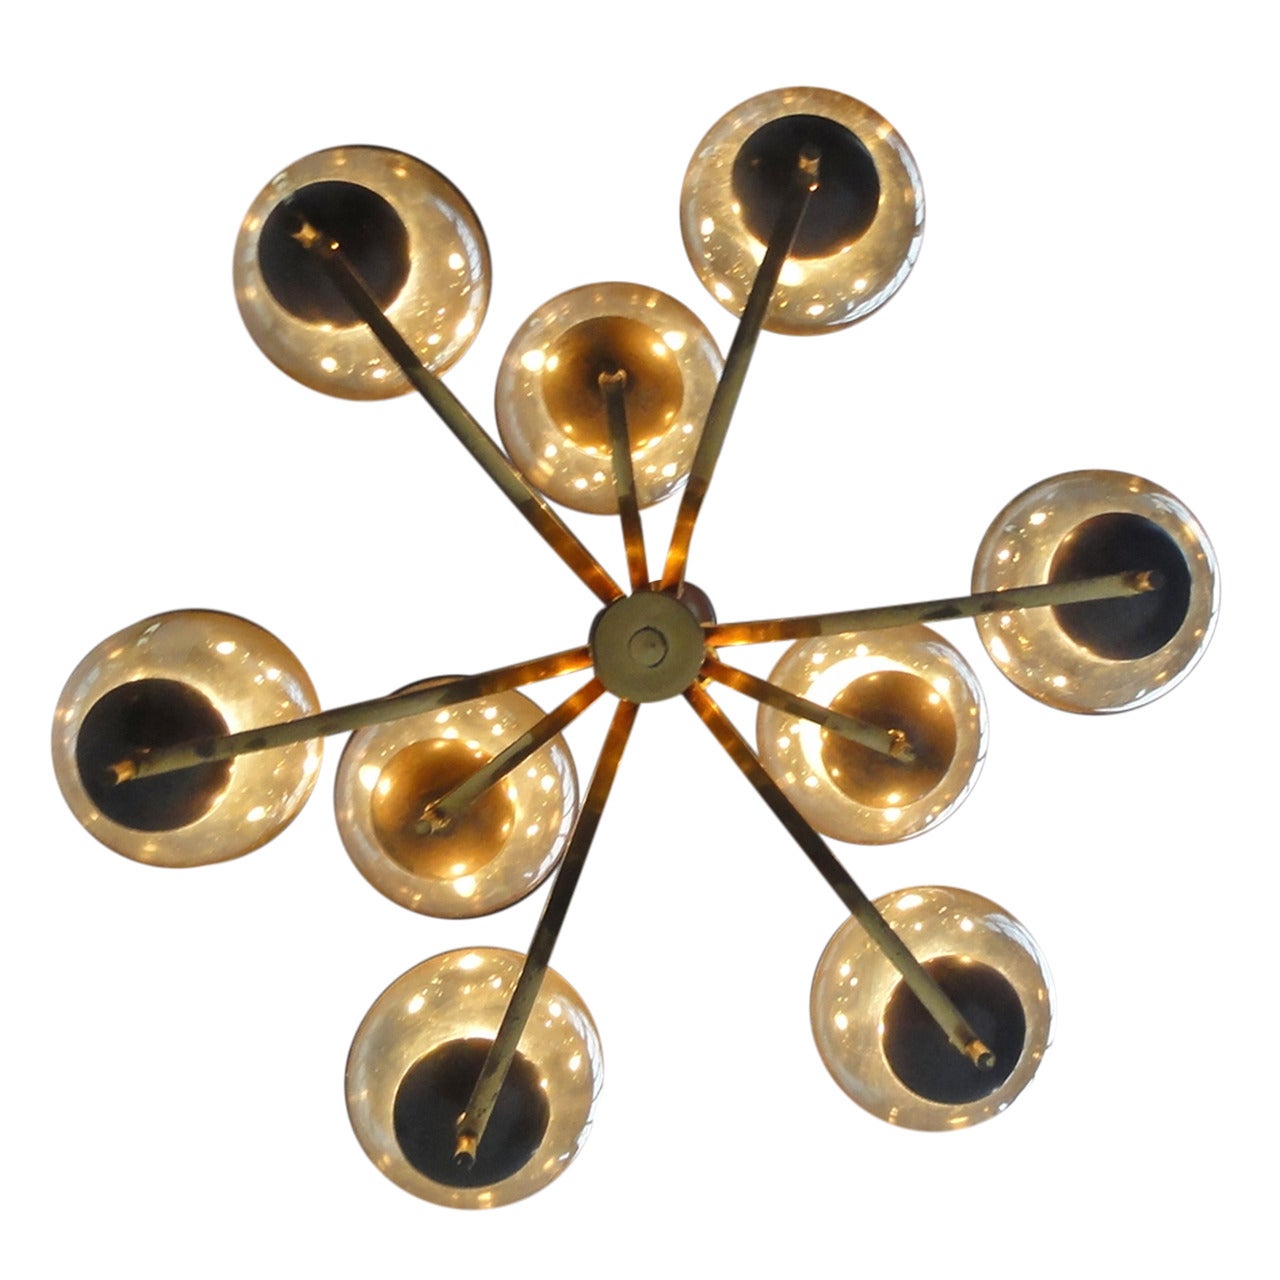 1950's Italian glass & brass chandelier with 9 glass globes